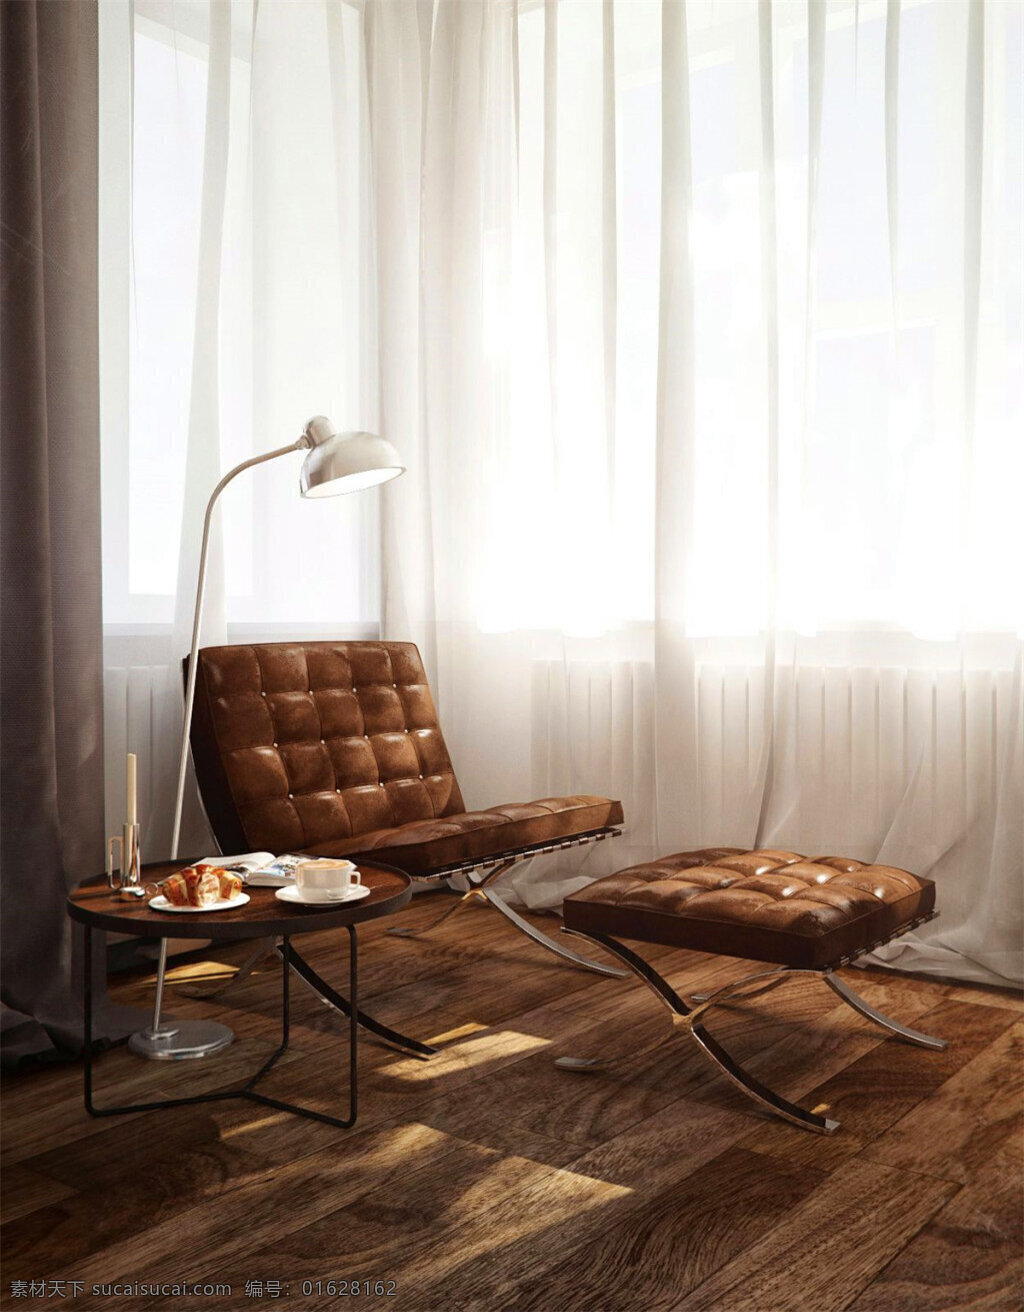 现代 精致 客厅 褐色 皮质 沙发椅 室内装修 效果图 客厅装修 白色窗帘 木地板 白色落地灯